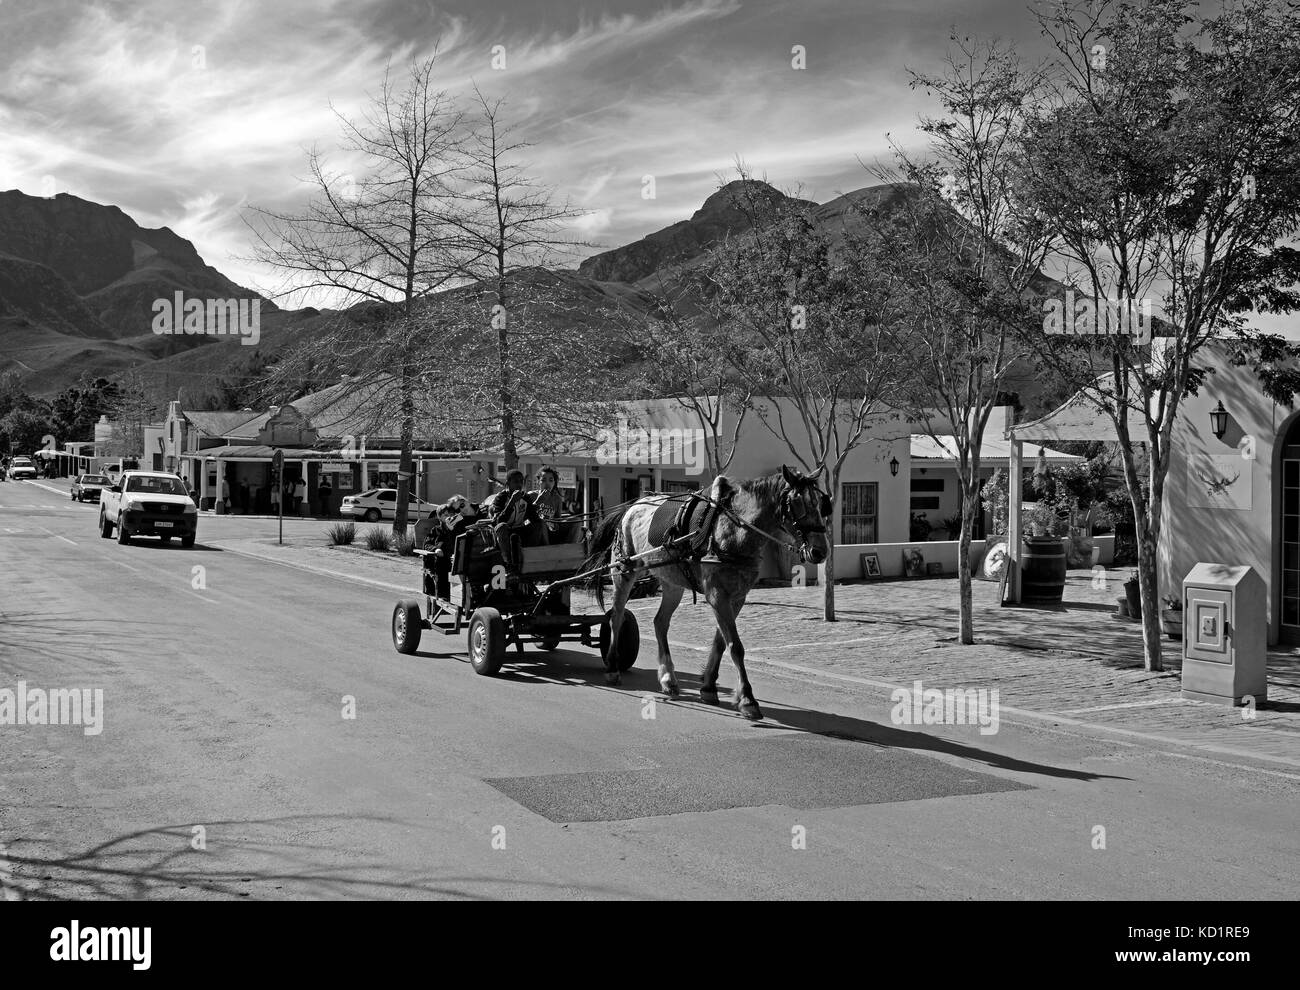 Les visiteurs ayant un lecteur dans une charrette à âne dans la route principale du village pittoresque de greyton dans la province occidentale de l'Afrique du Sud.b&w photographie Banque D'Images